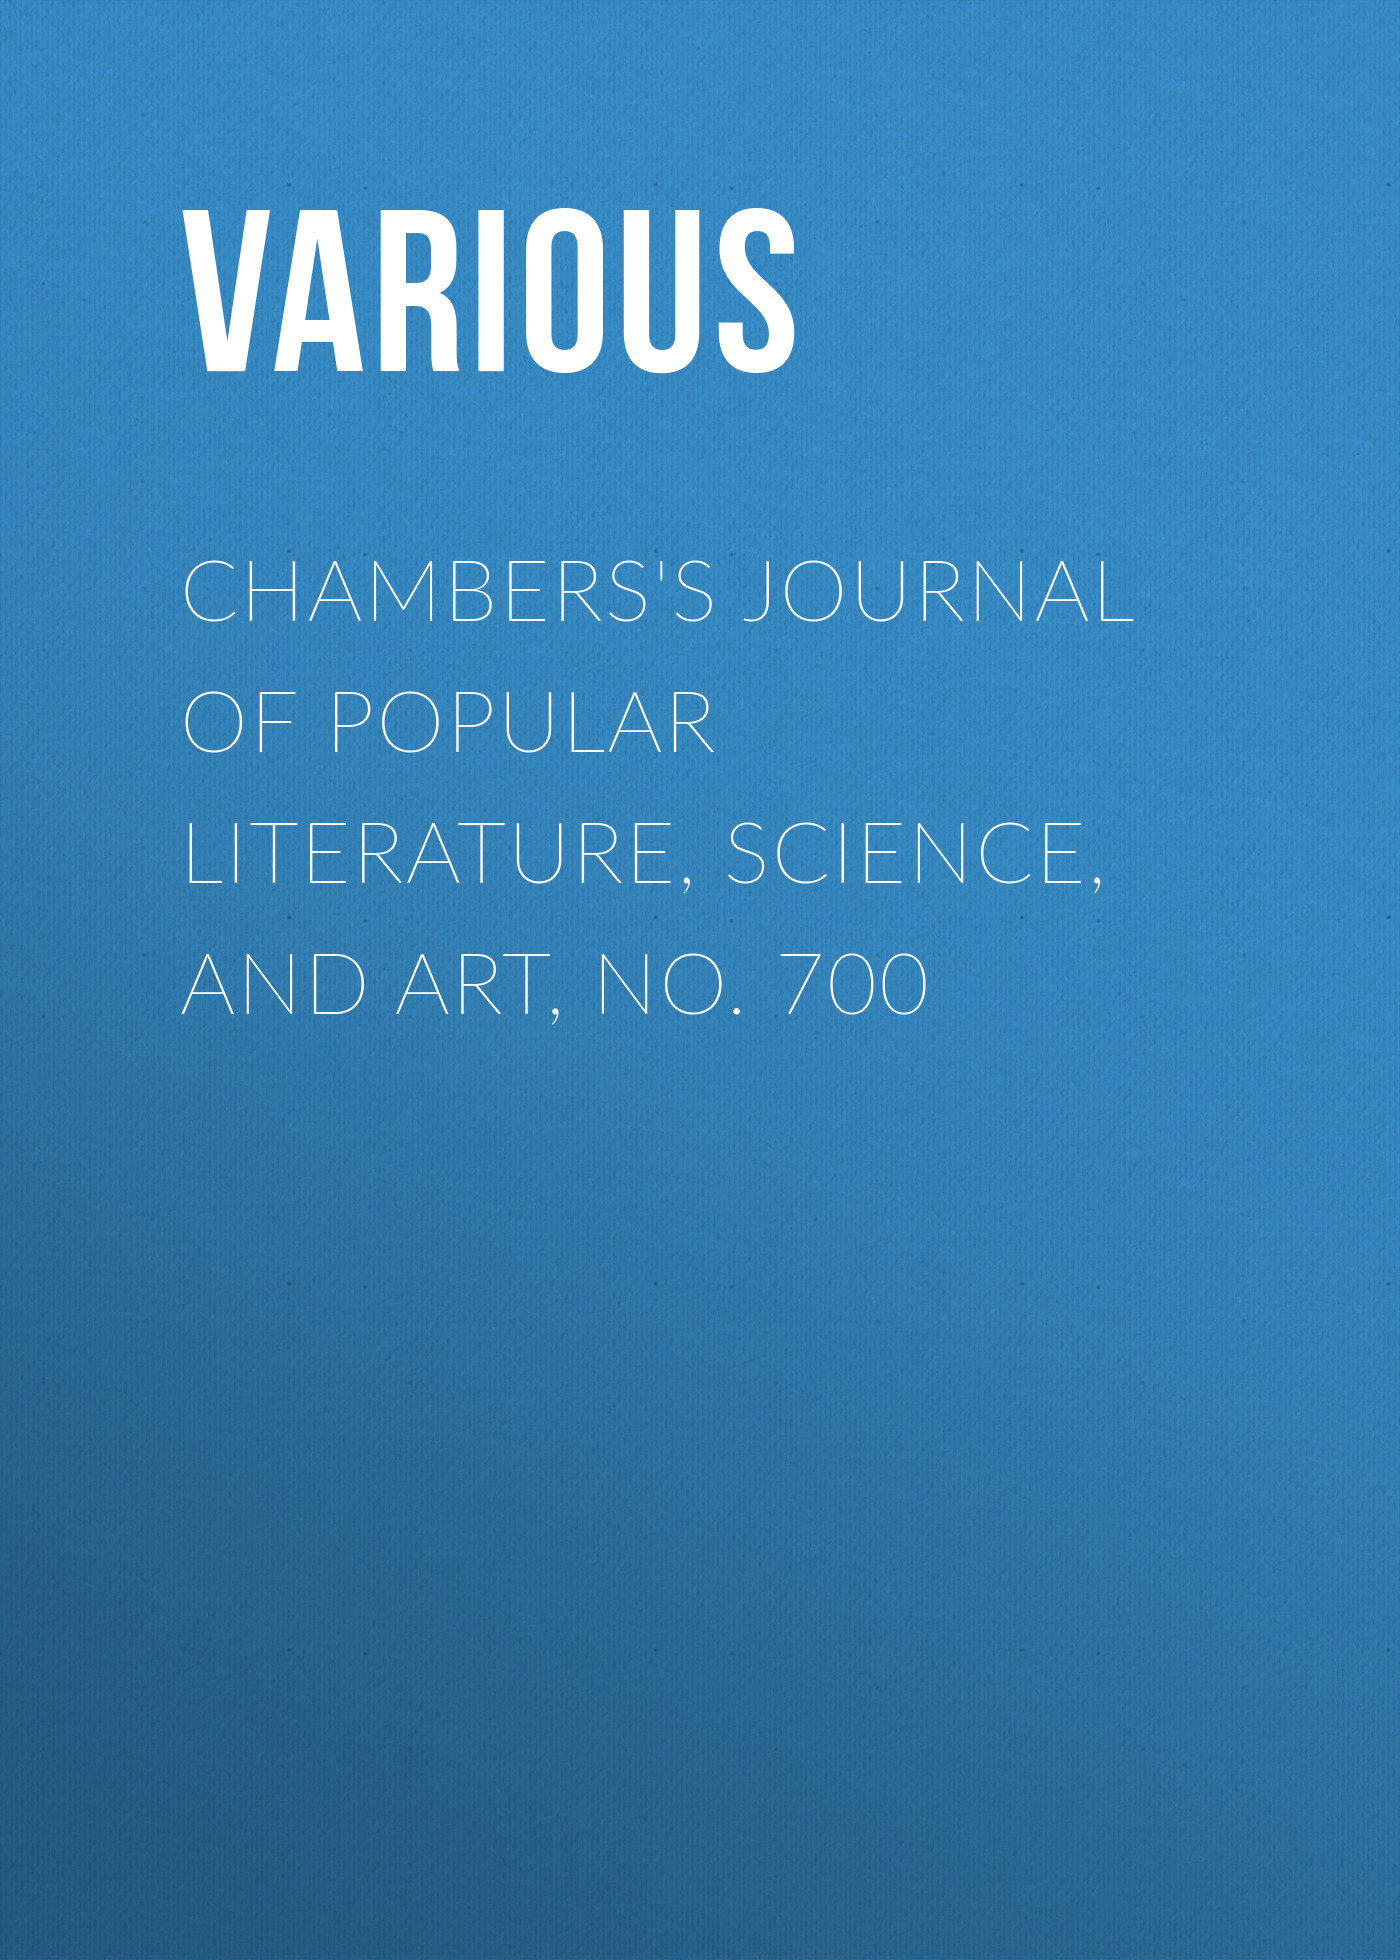 Книга Chambers's Journal of Popular Literature, Science, and Art, No. 700 из серии , созданная  Various, может относится к жанру Журналы, Зарубежная образовательная литература. Стоимость электронной книги Chambers's Journal of Popular Literature, Science, and Art, No. 700 с идентификатором 25569807 составляет 0 руб.